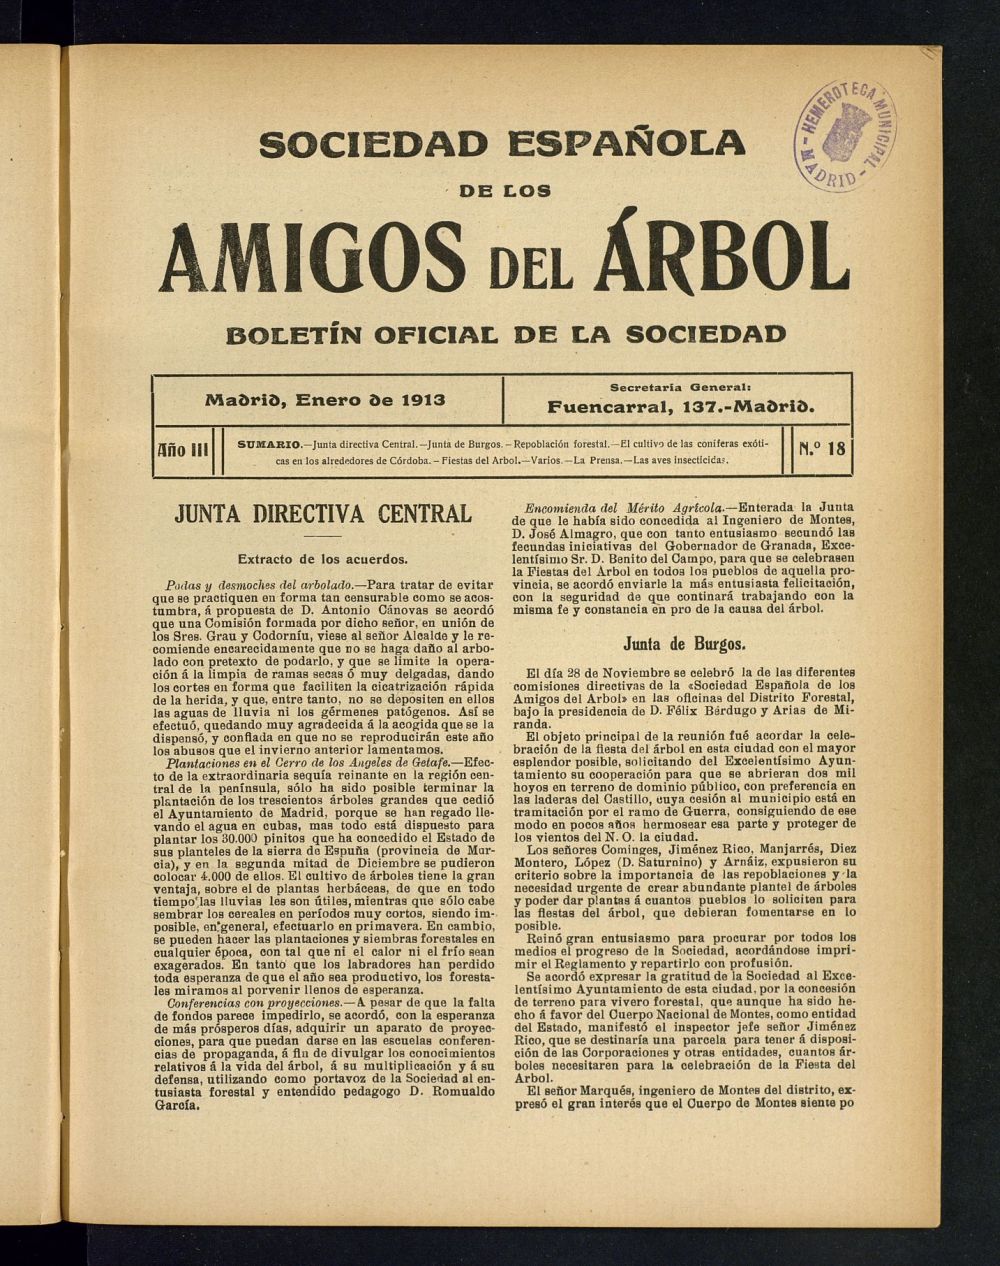 Boletn Comisin organizadora de la Sociedad Espaola de los amigos del rbol de enero de 1913